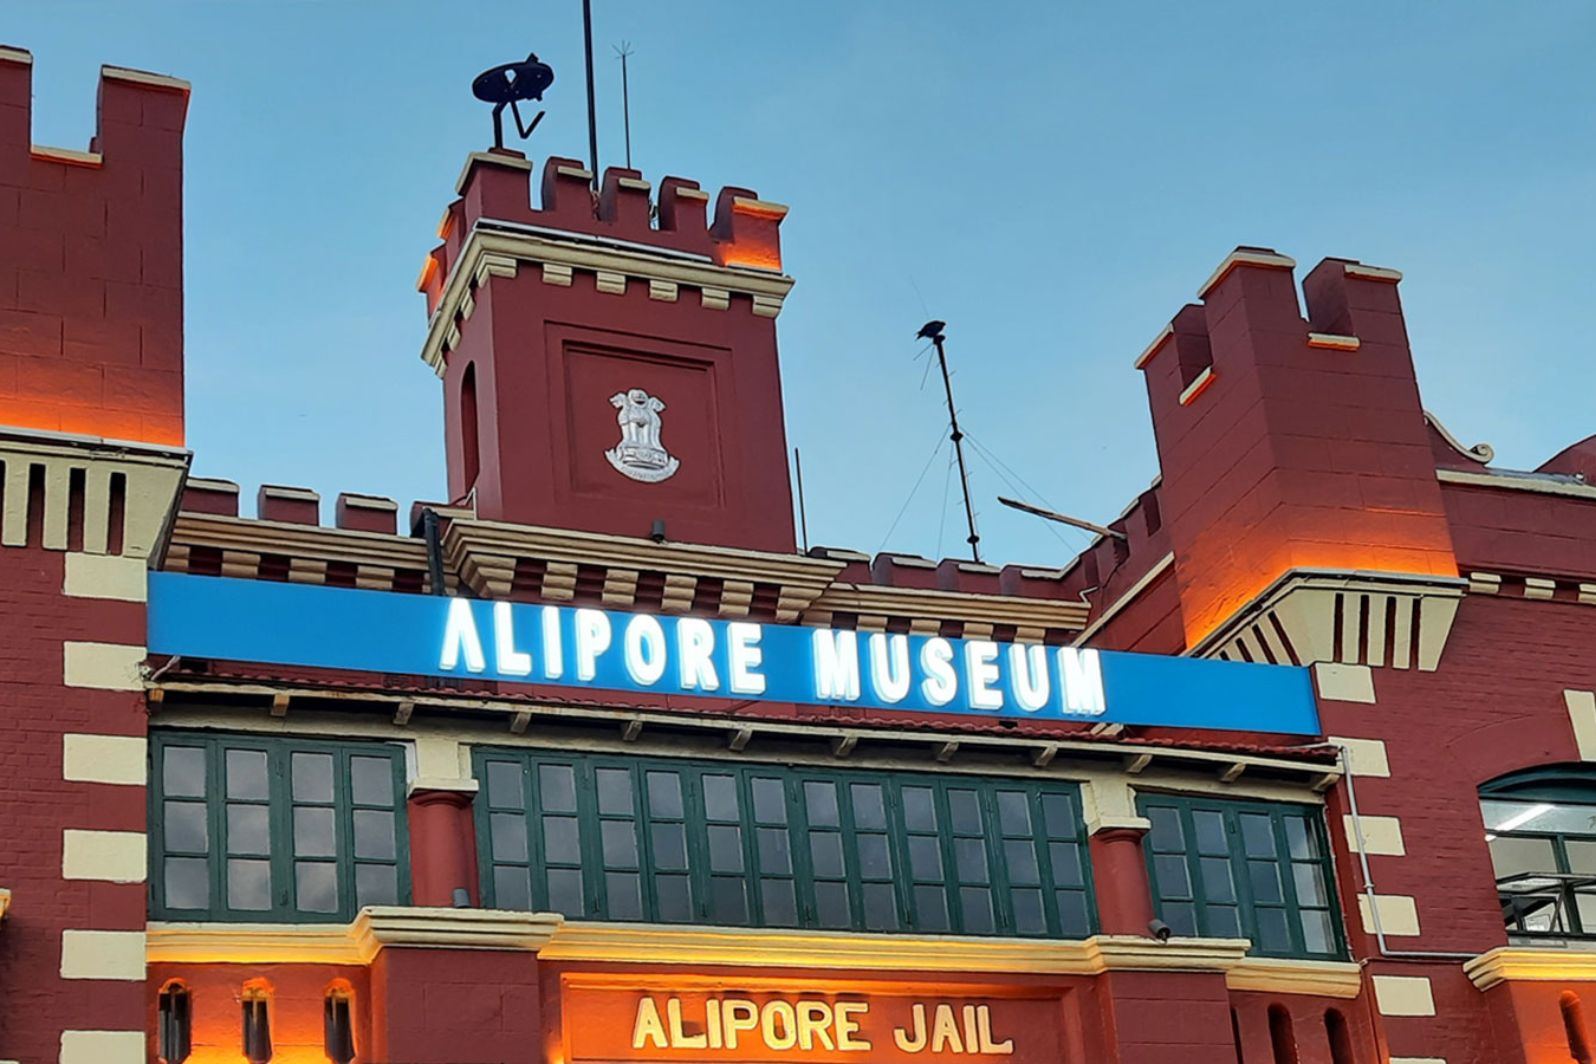 alipore jail museum in kolkata